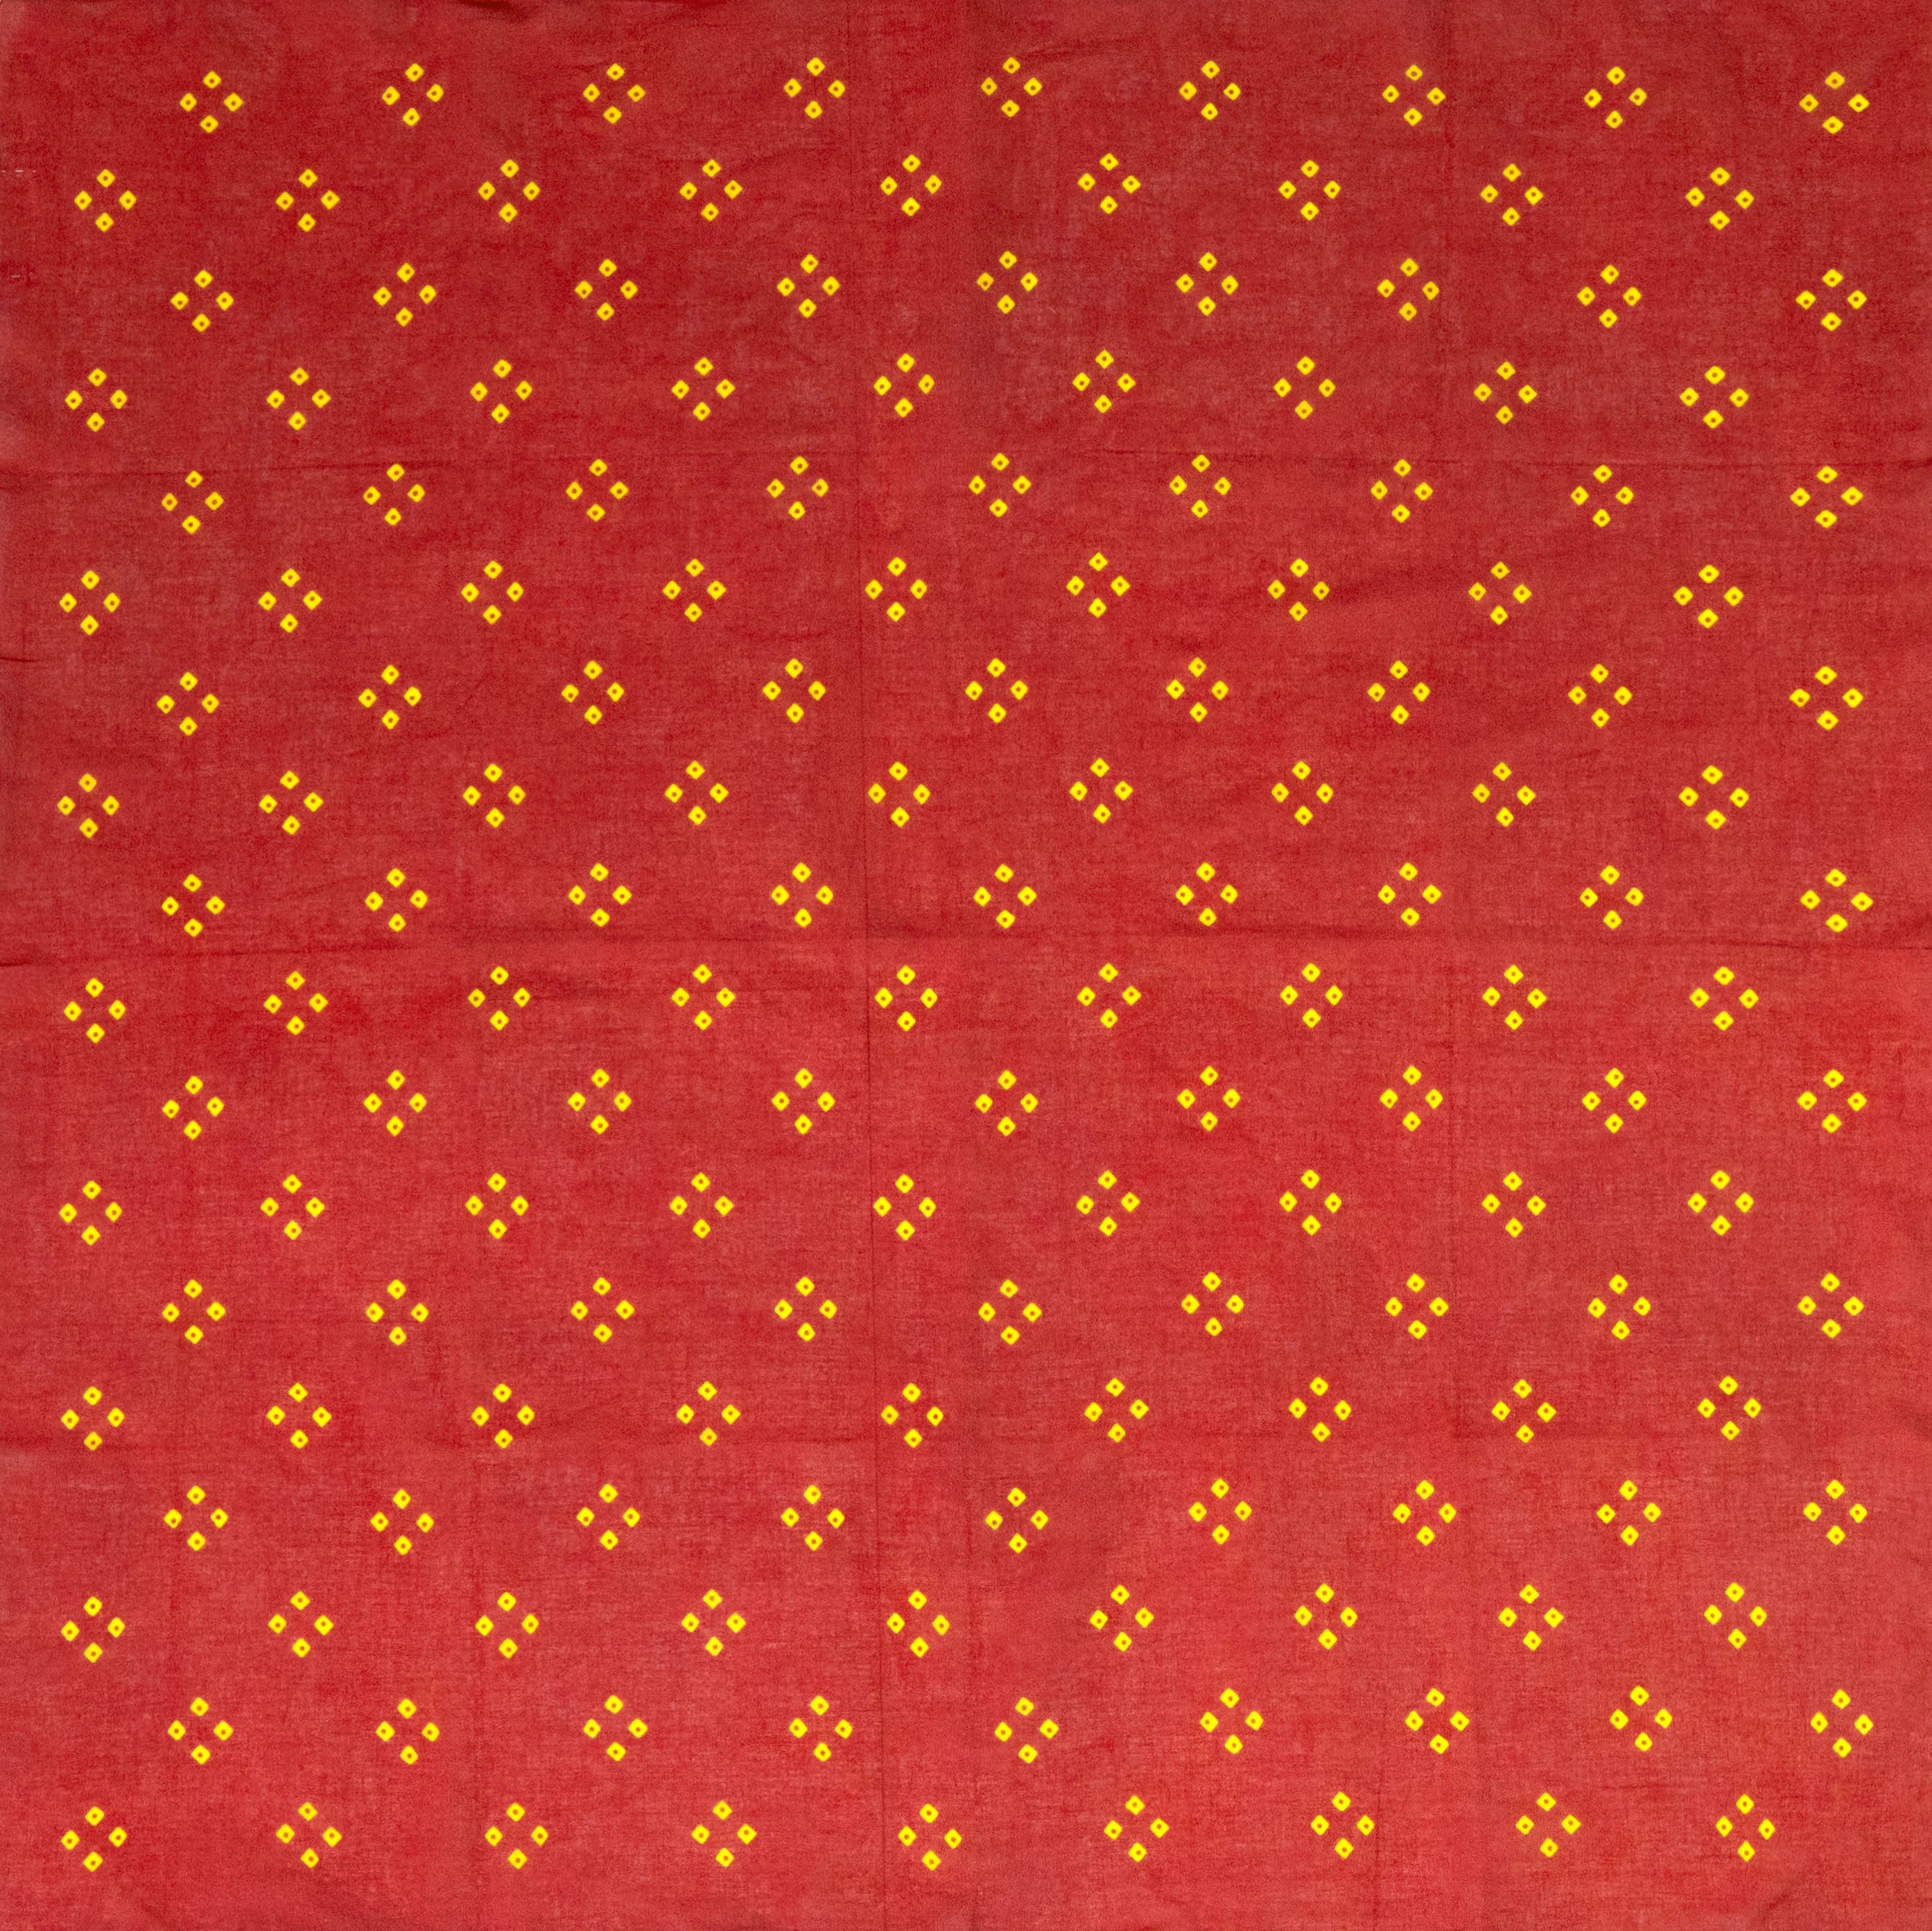 Red & Yellow "Spot'd" Handkerchief - Burnley & Trowbridge Co.